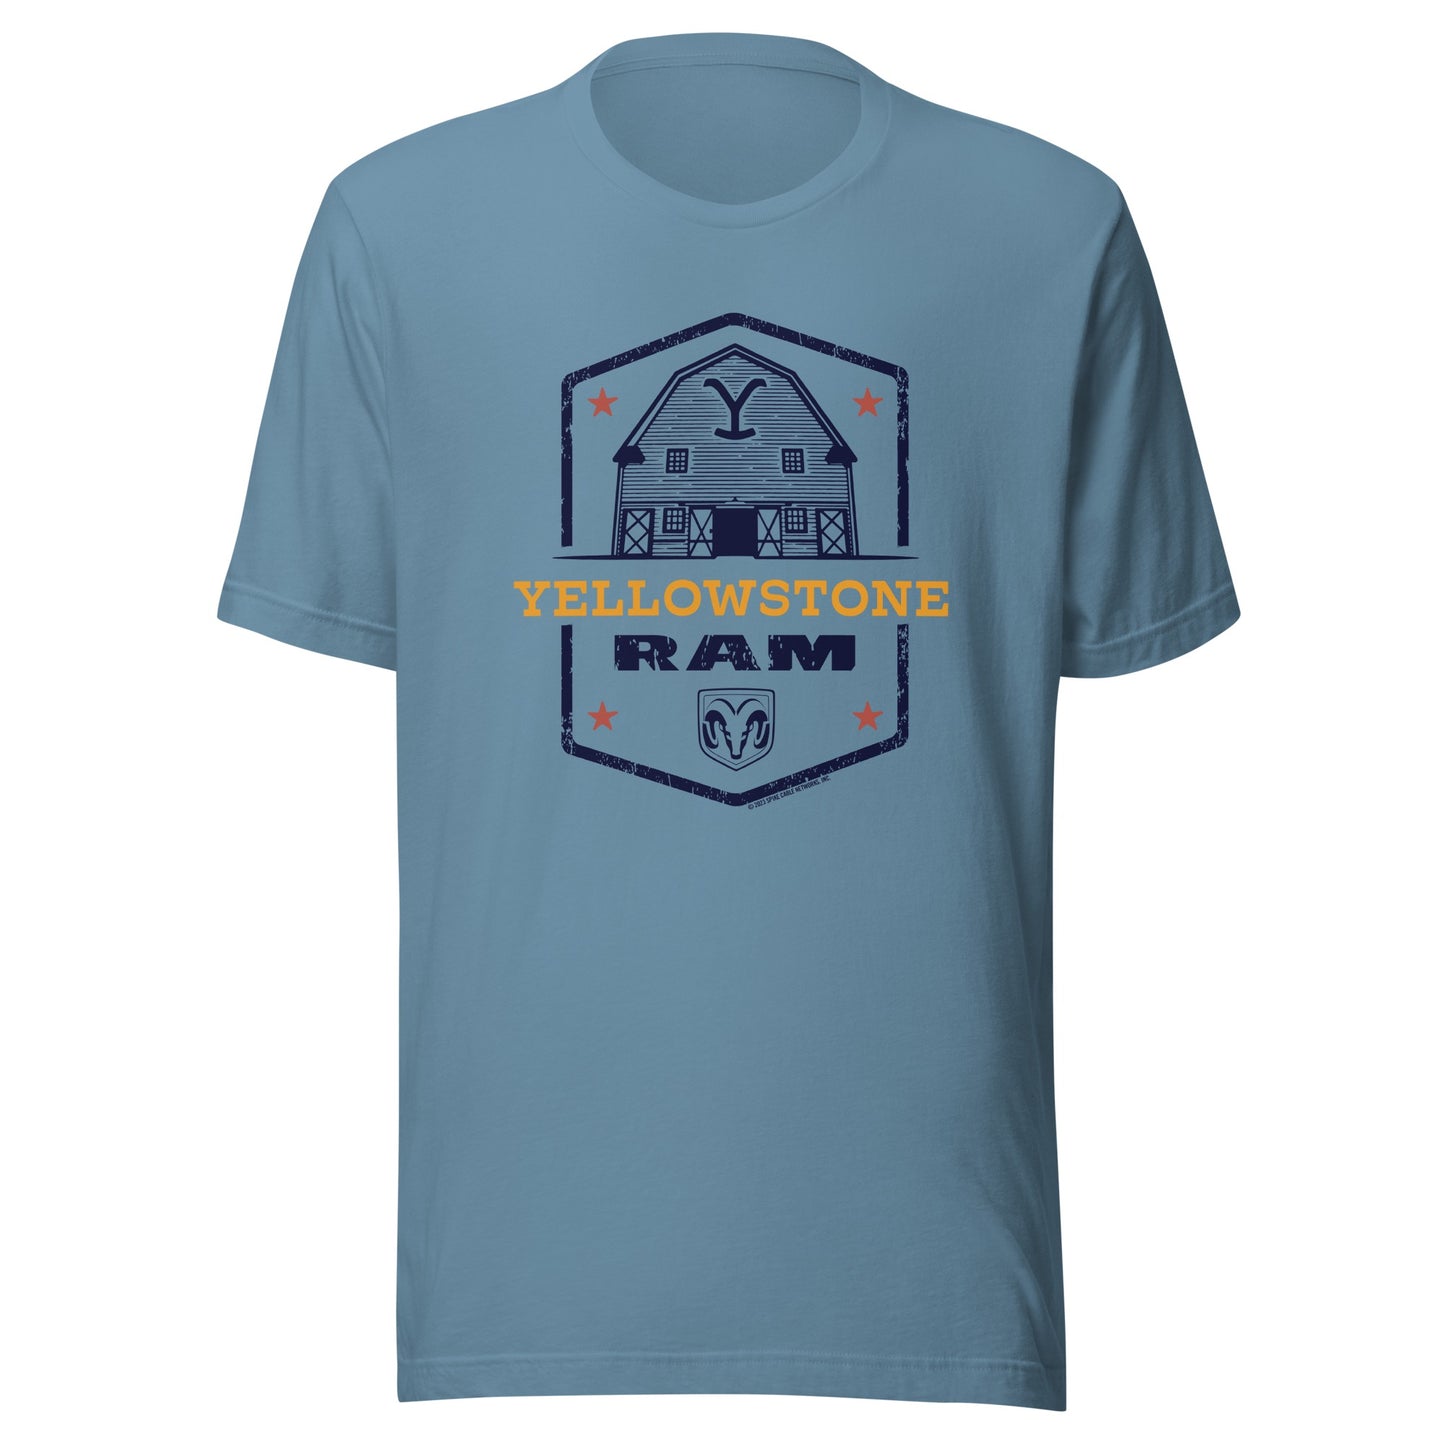 Yellowstone x Ram Barn T-Shirt